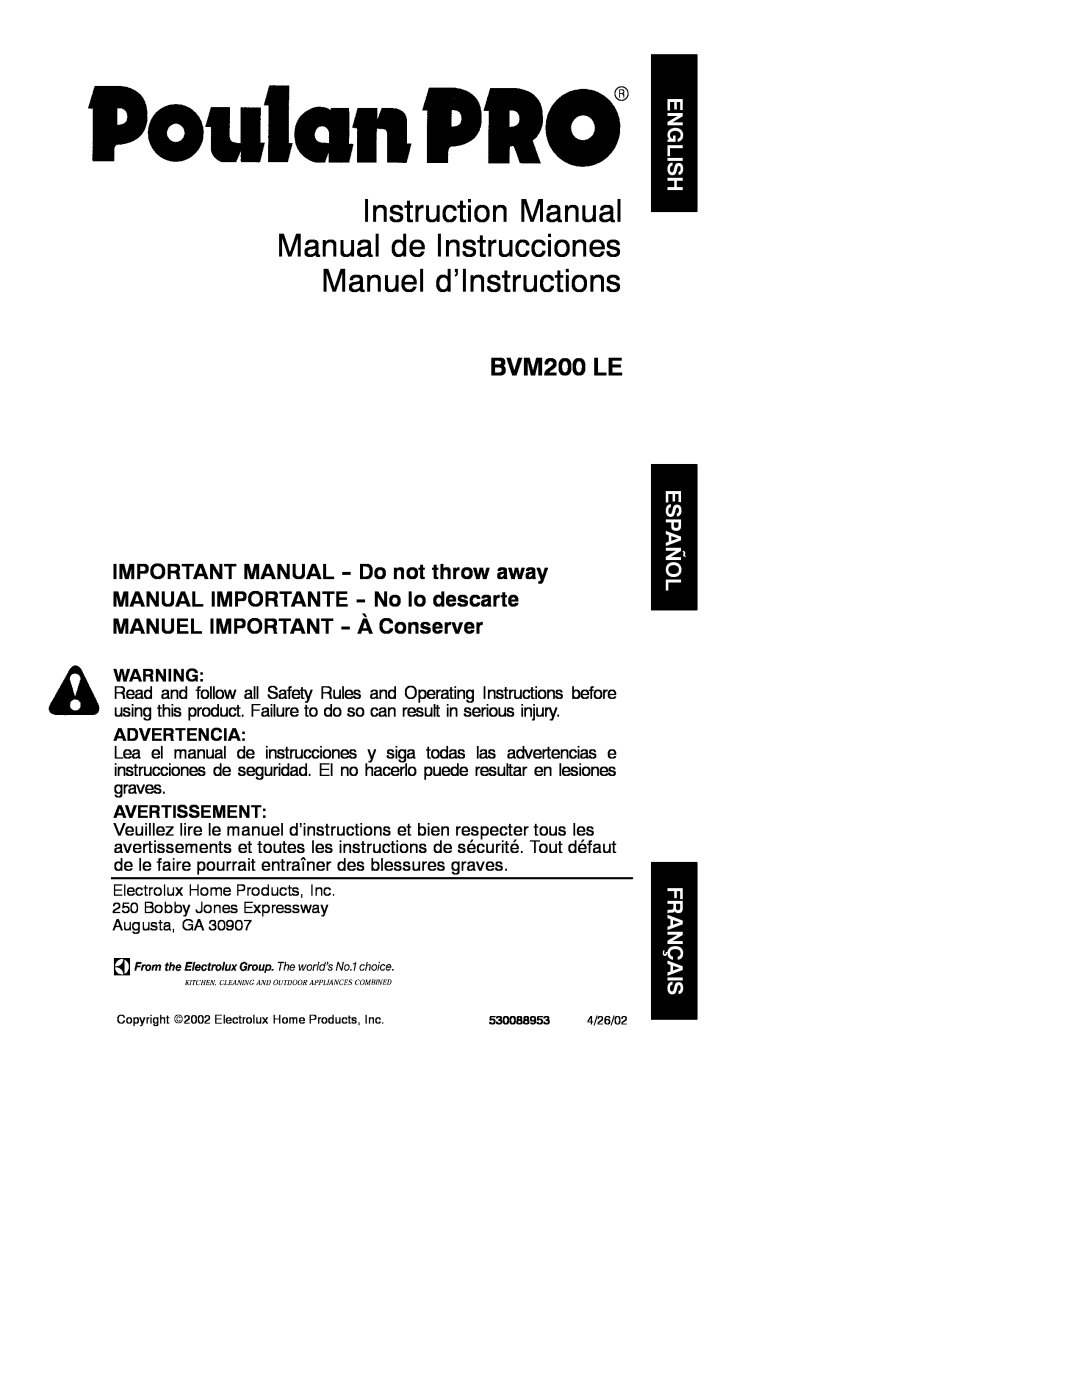 Poulan 530088953 instruction manual Instruction Manual Manual de Instrucciones Manuel d’Instructions, BVM200 LE 